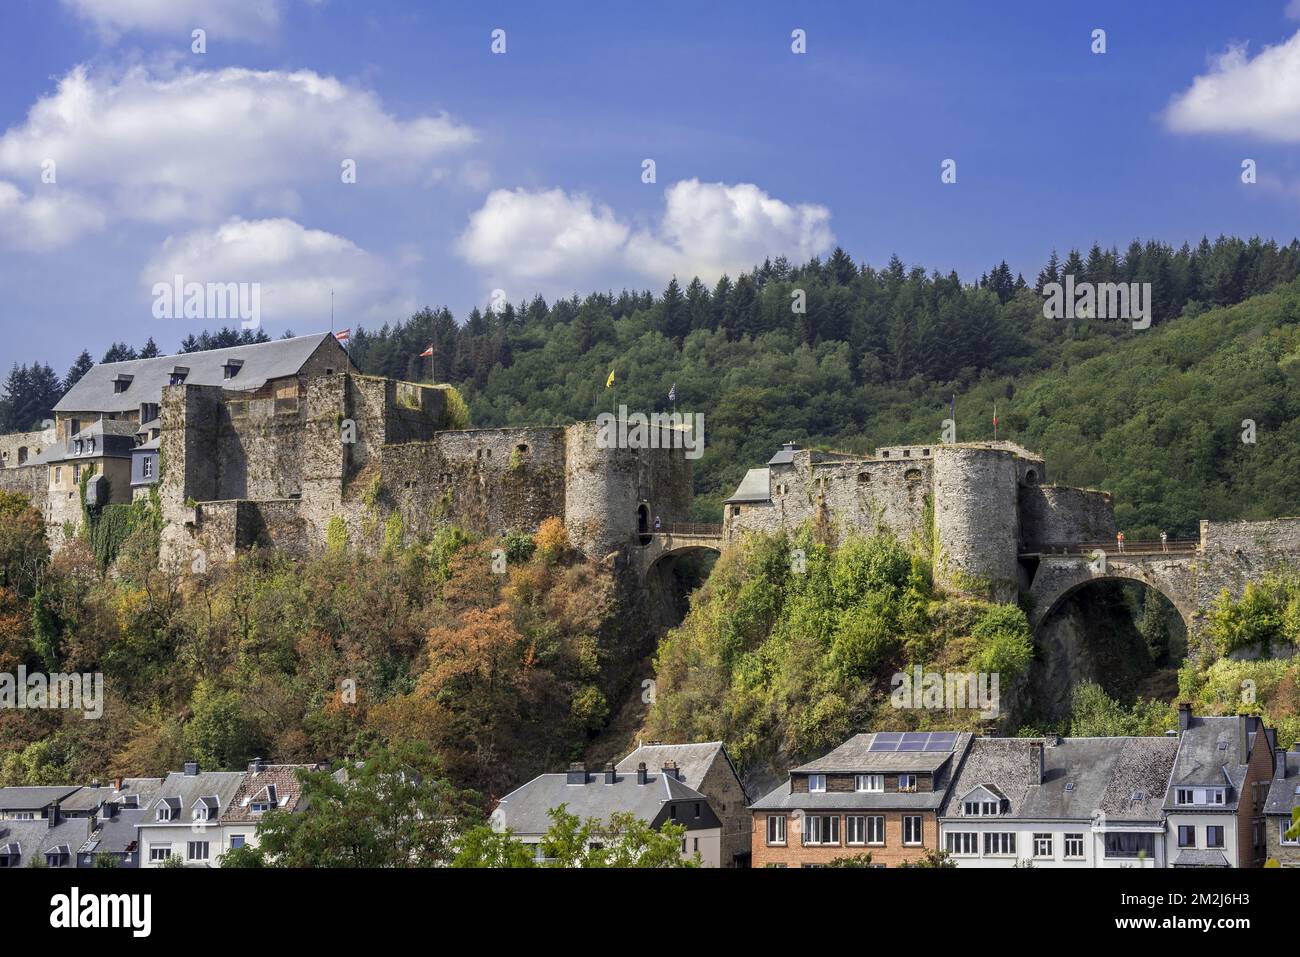 Das mittelalterliche Schloss Château de Bouillon in der Stadt Bouillon, Provinz Luxemburg, belgische Ardennen, Belgien | Château de Bouillon, Luxemburg, Ardennen, Belgique 27/08/2018 Stockfoto